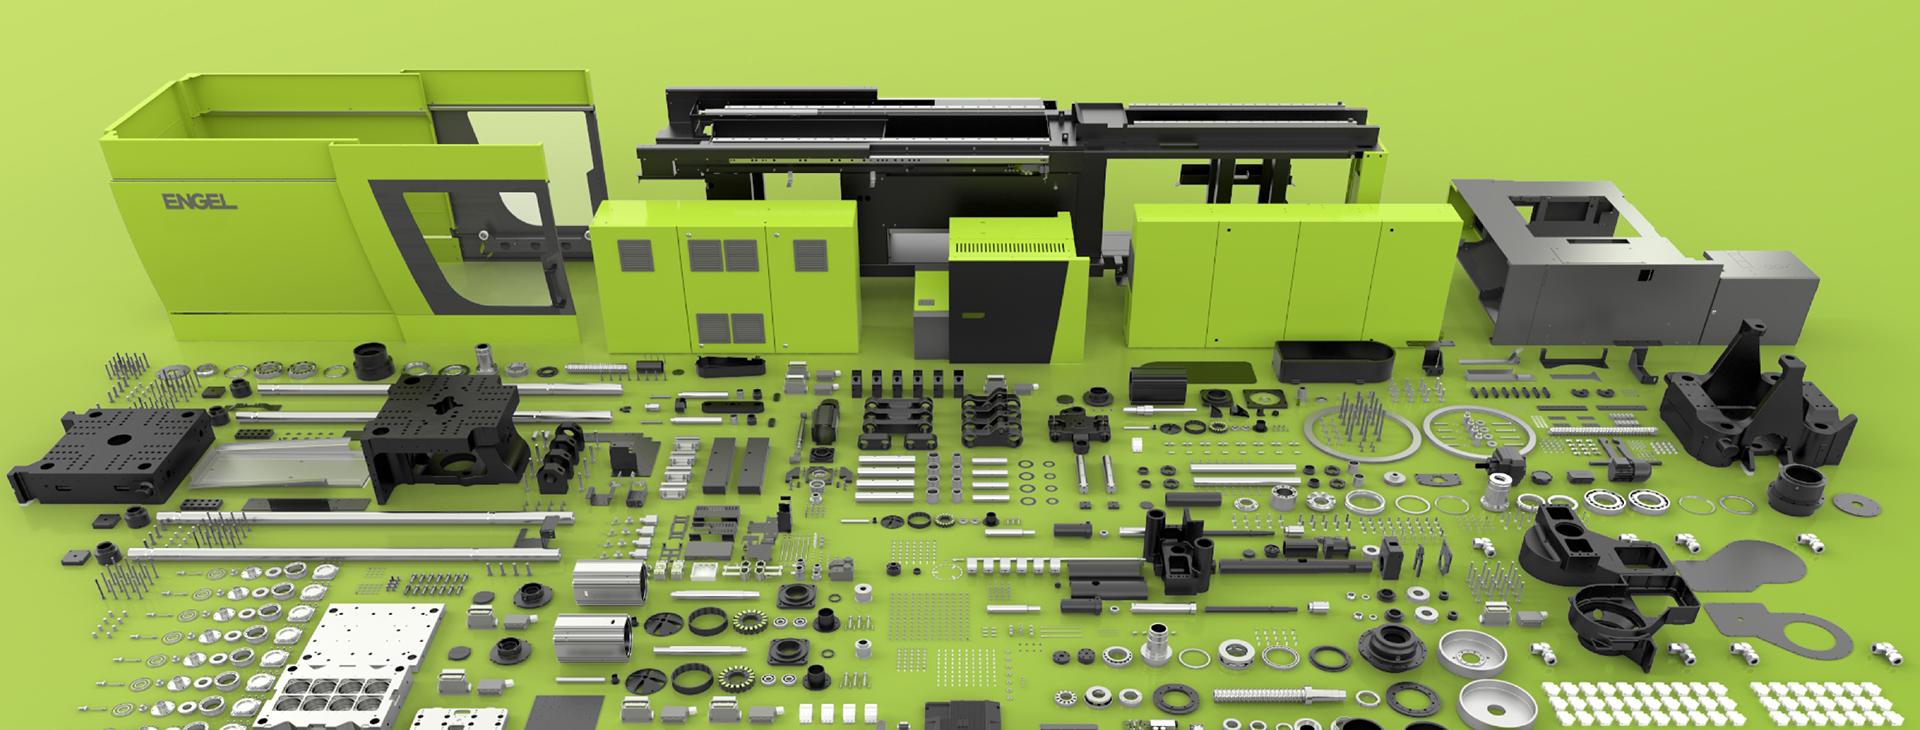 Overview of all rendered ENGEL machine parts | Übersicht aller gerenderten ENGEL Maschinenteile